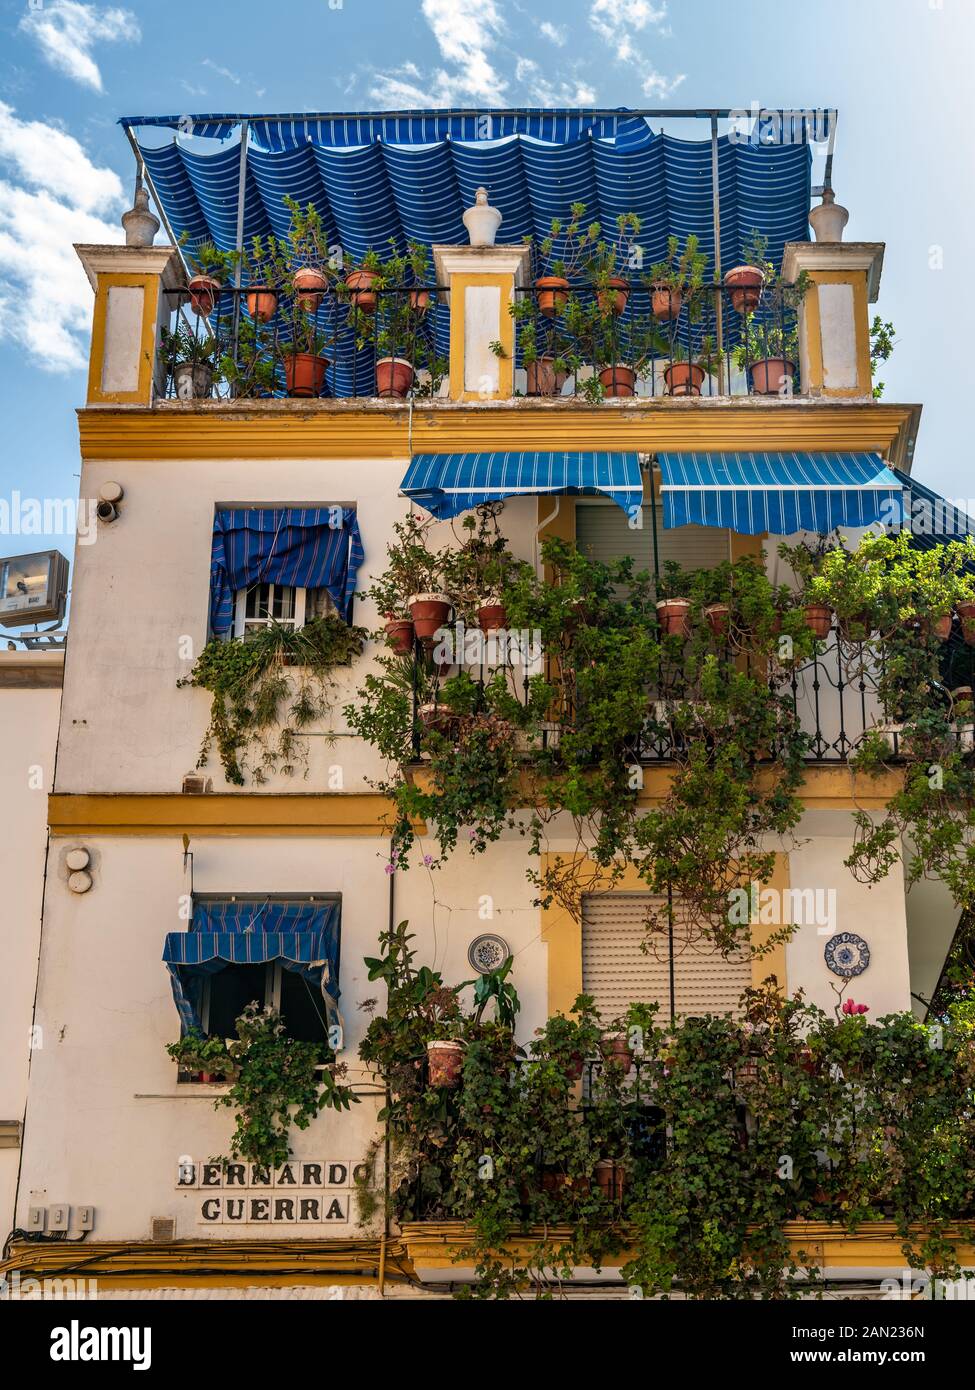 Une pergola bleue vibrante couvre un jardin verdoyant sur le toit d'une maison au coin de Calle Bernado Guerra et Calle Pelay Correa, Triana. Banque D'Images